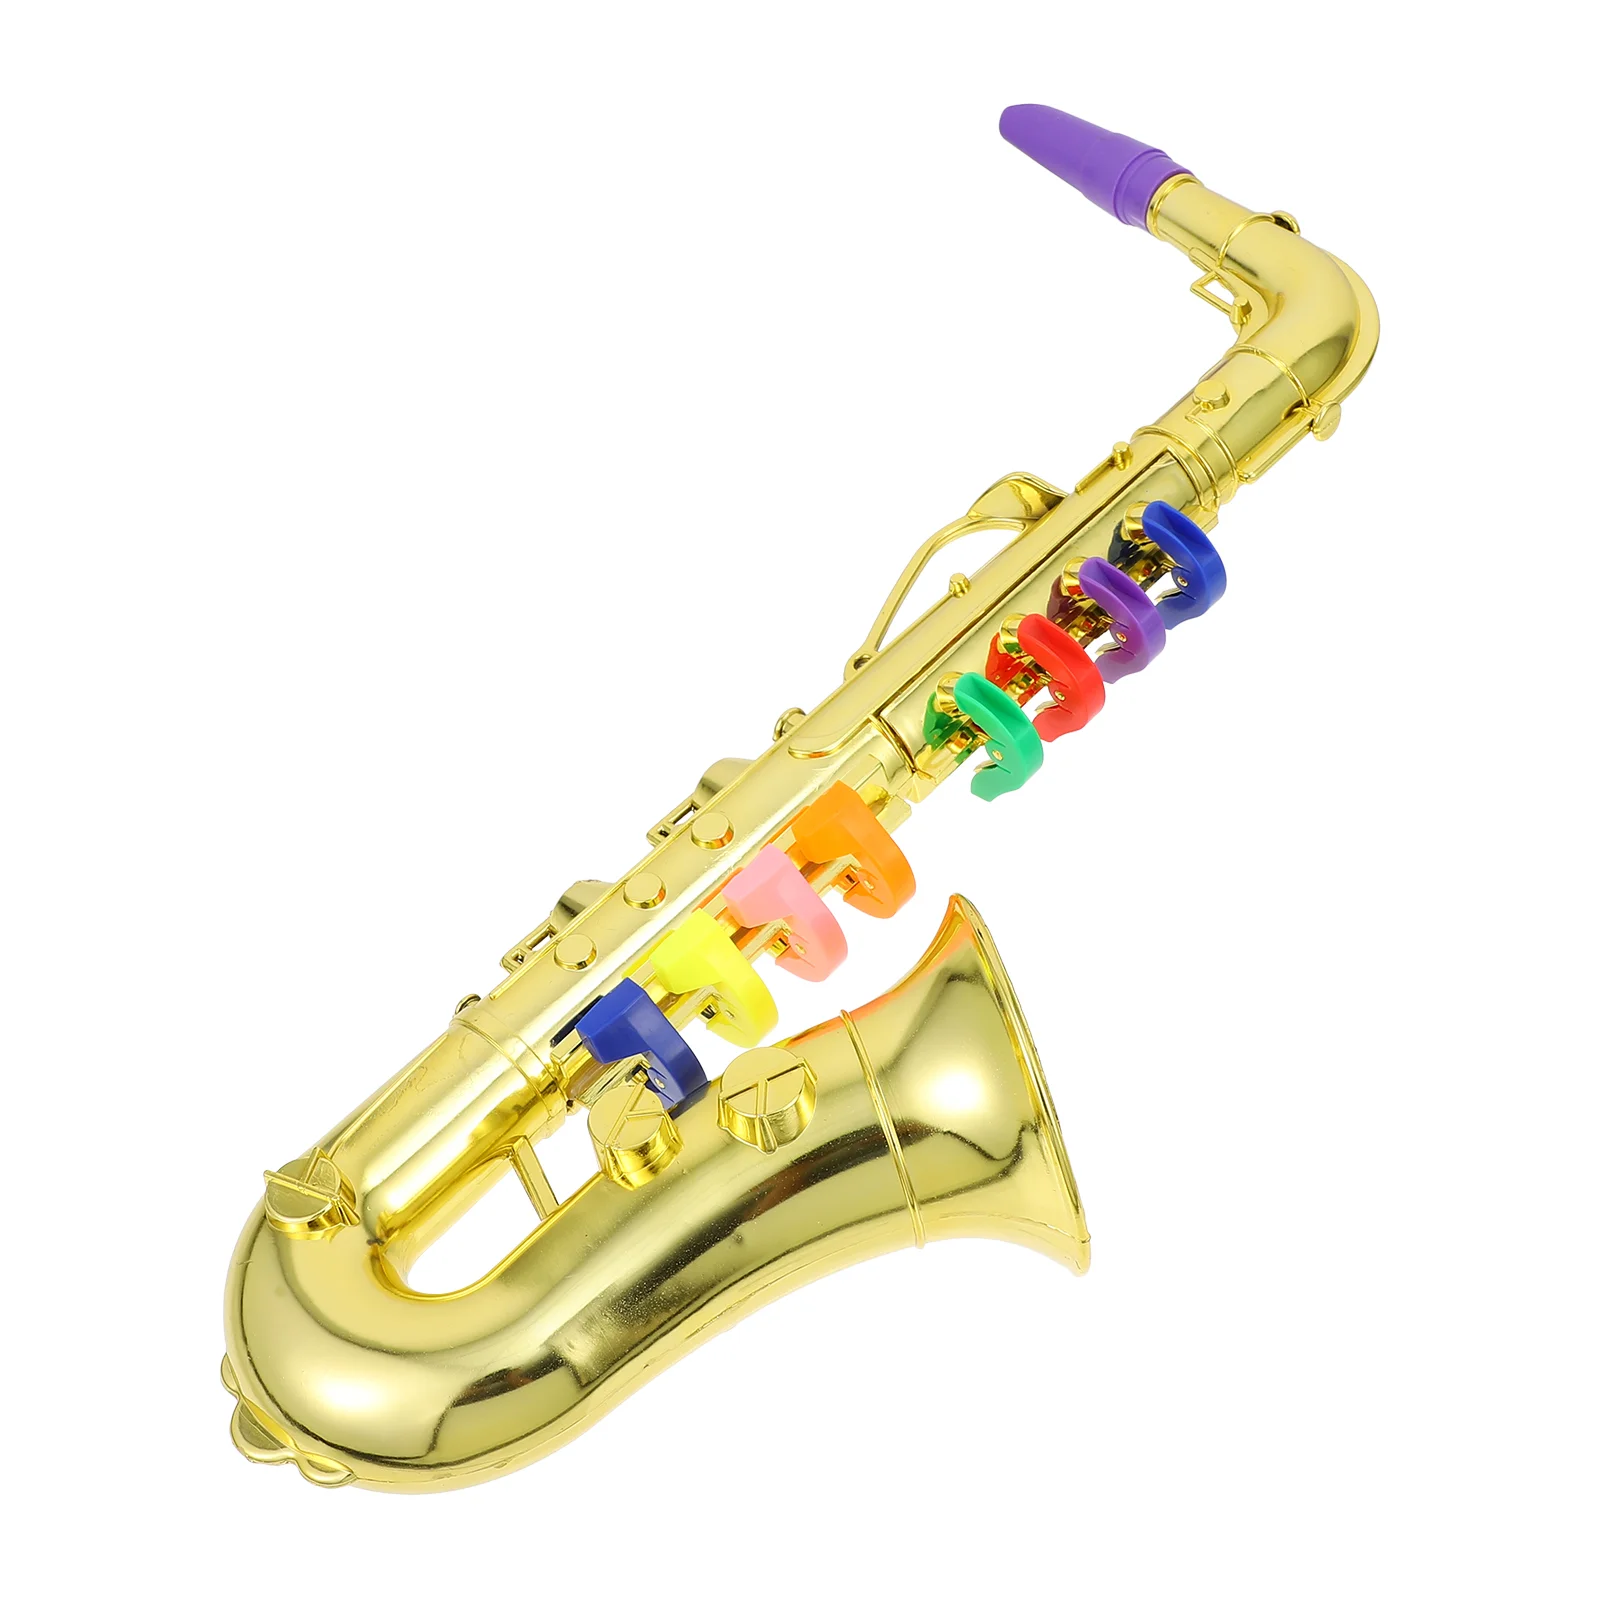 

Искусственный саксофон, игрушка, имитация музыки, модель саксофона, Детская музыка, музыкальные инструменты, детский день рождения